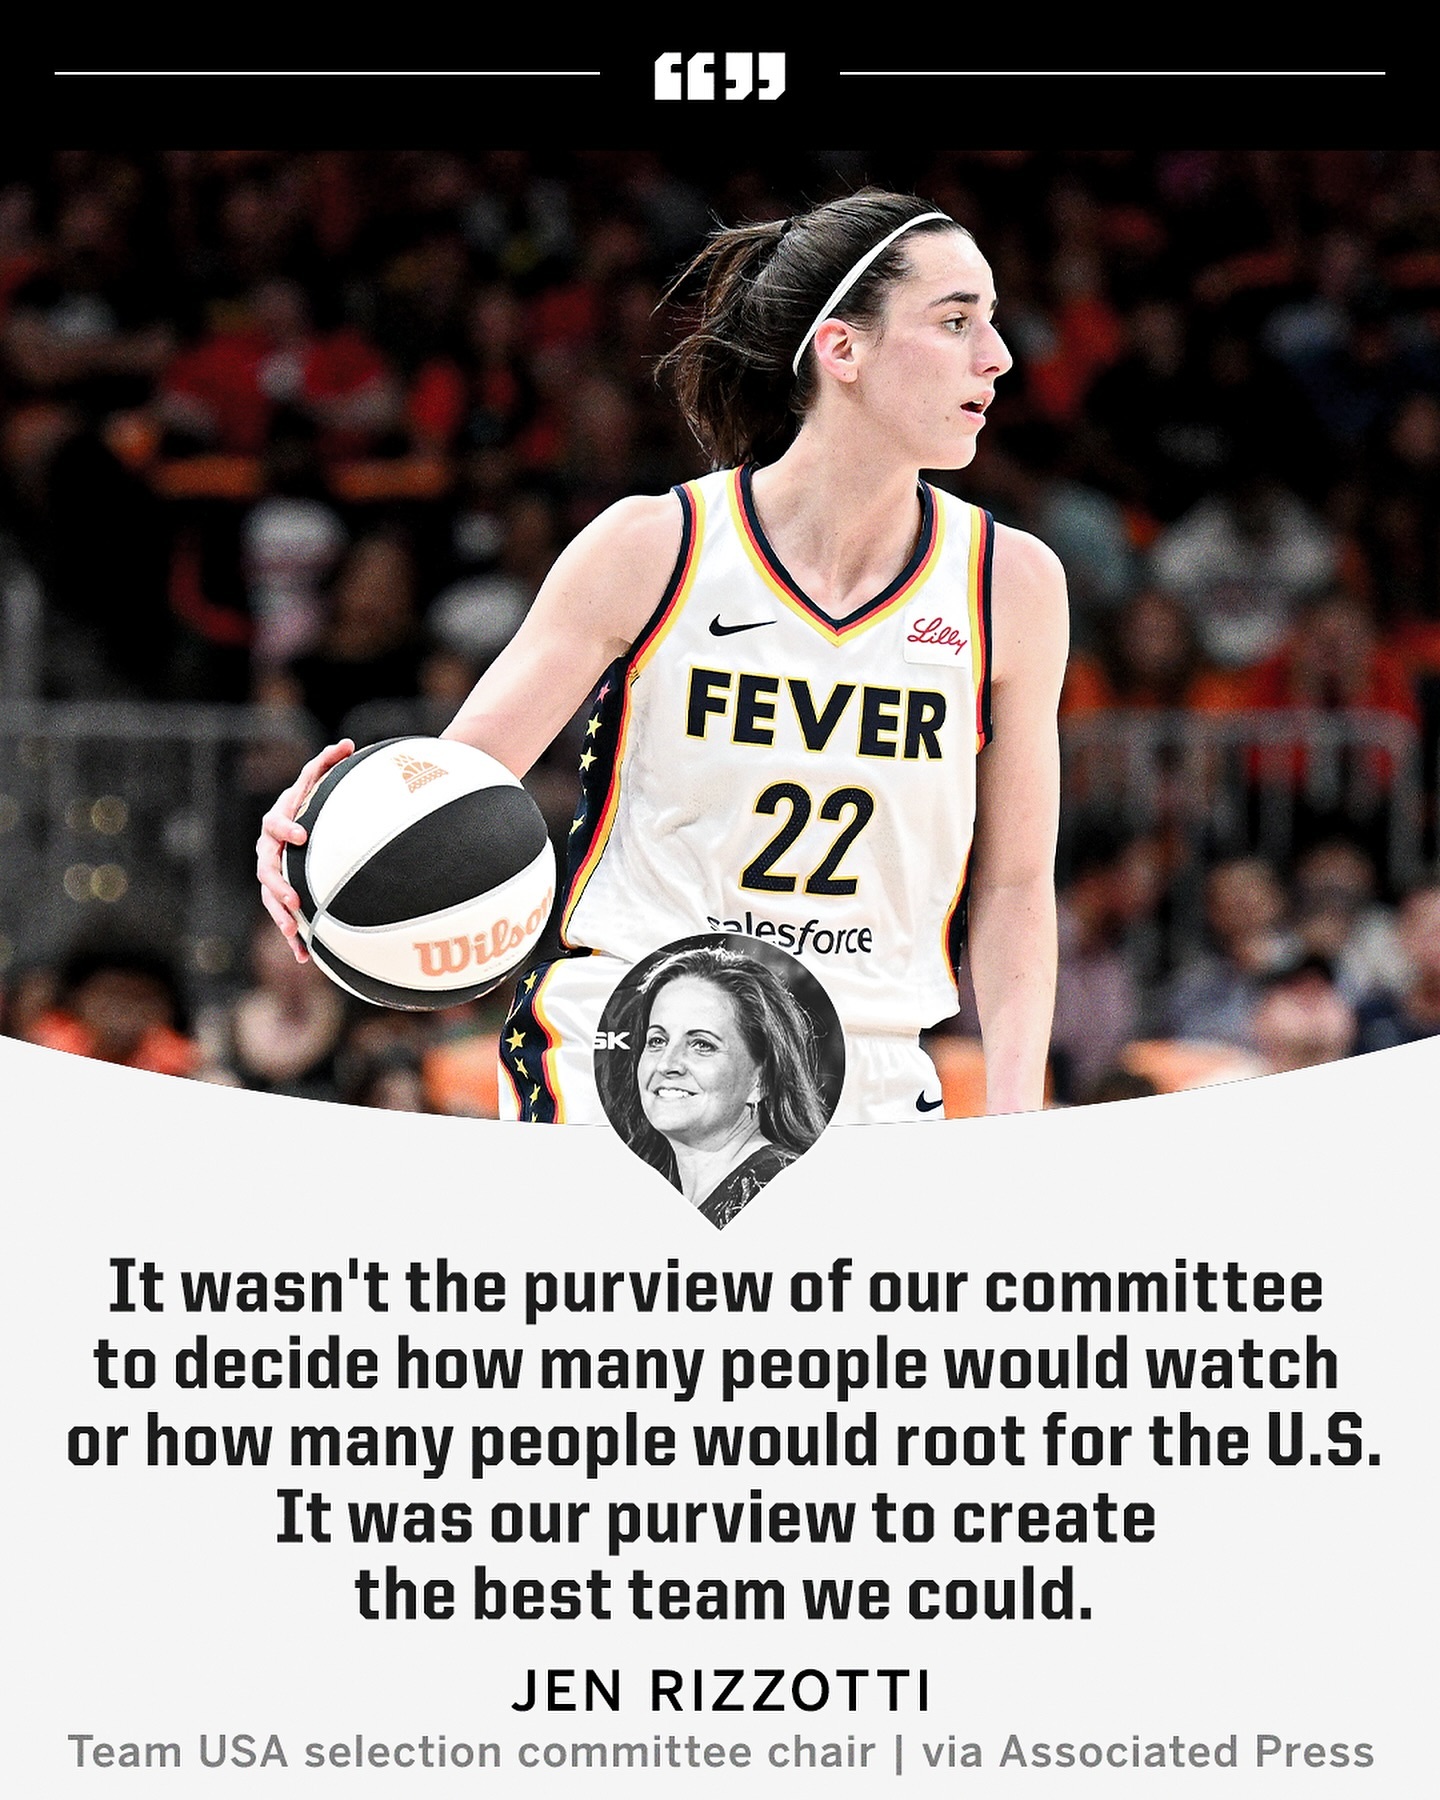  美国女篮国家队选拔委员会：我们的工作不是决定有多少人会看比赛